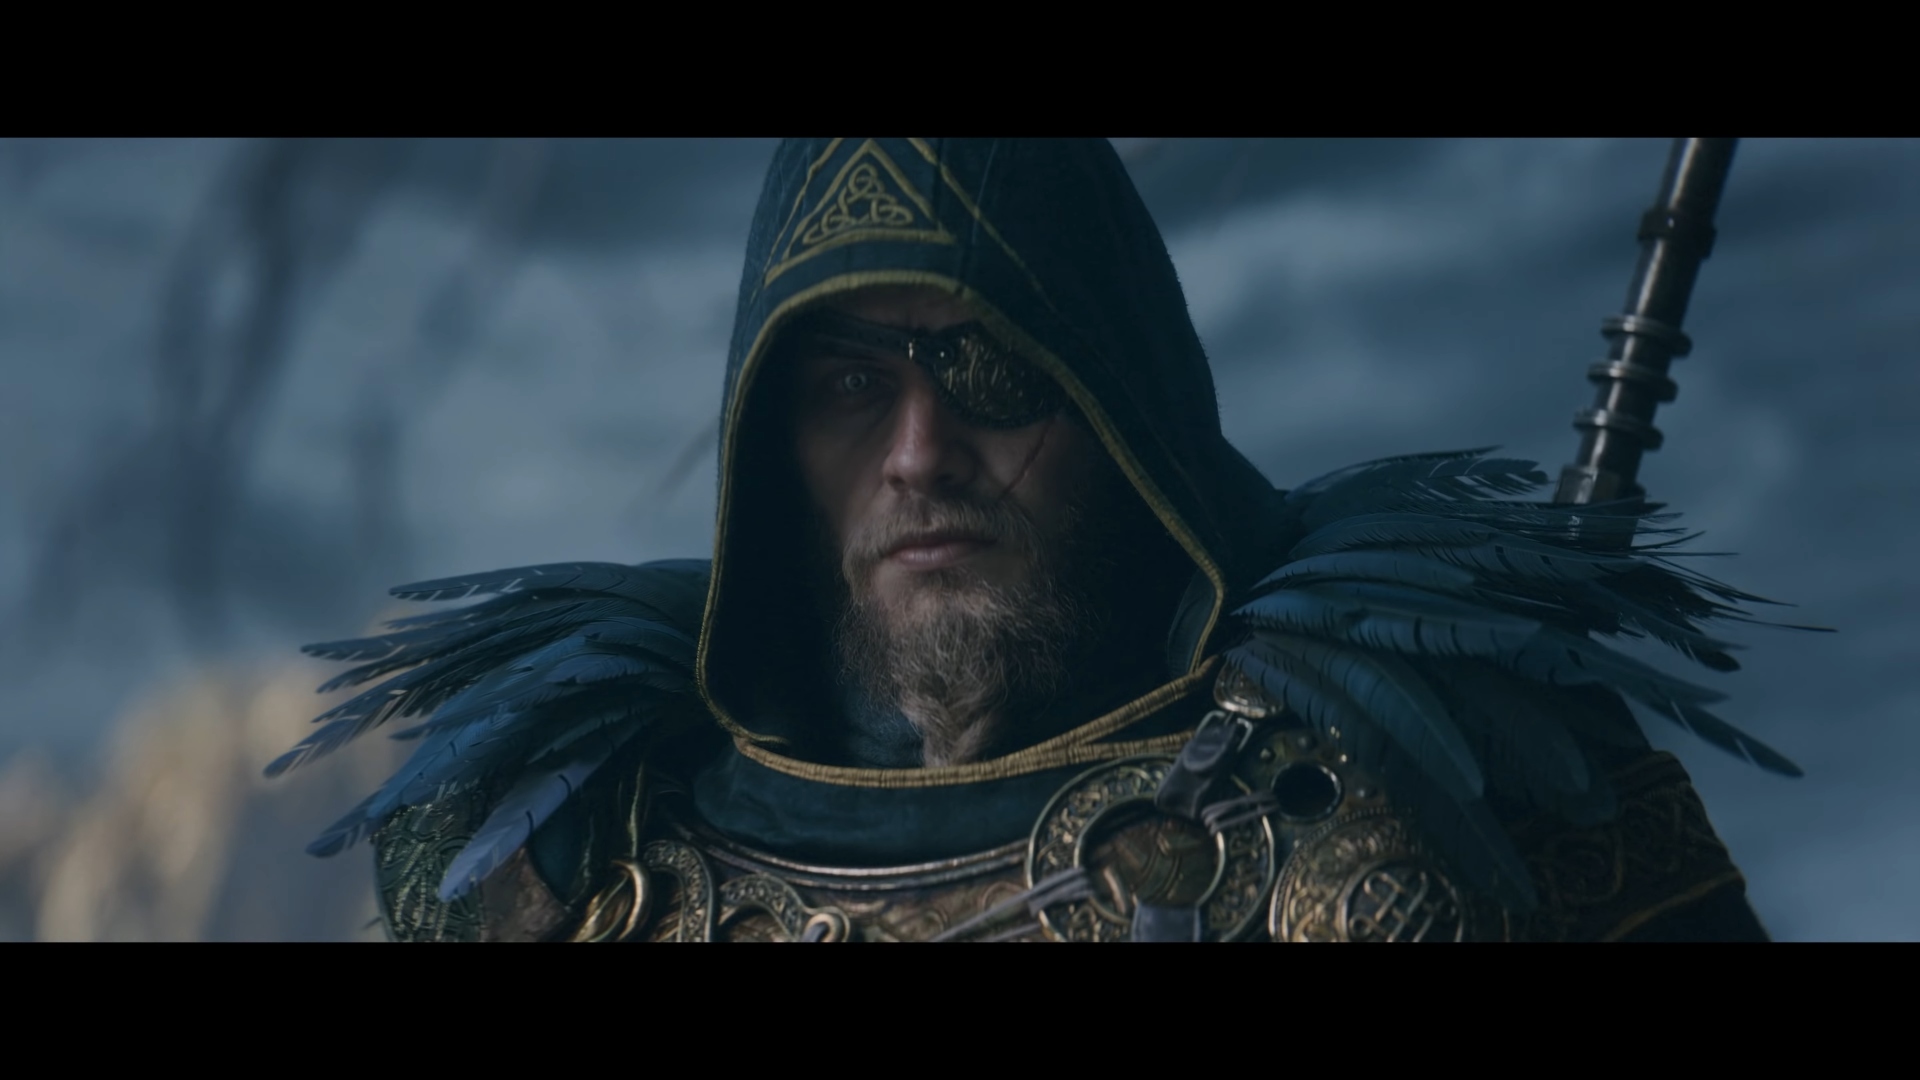 Assassin's Creed Valhalla Dawn of Ragnarök edition Ps5 Mídia